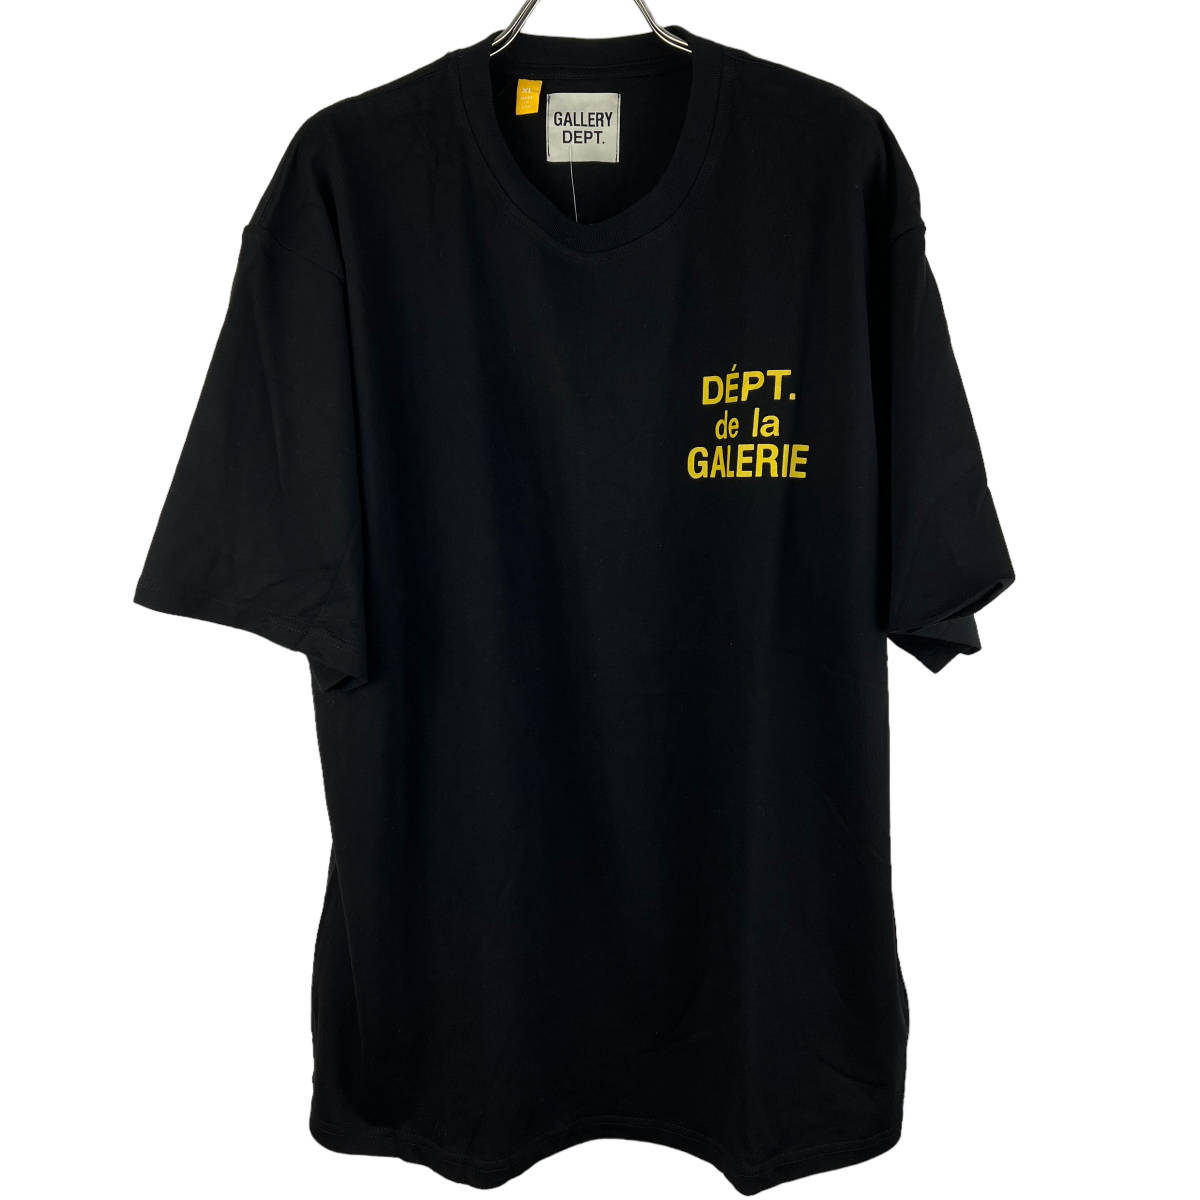 魅力的な価格 GALLERY DEPT(ギャラリーデプト) (black) Shirt T